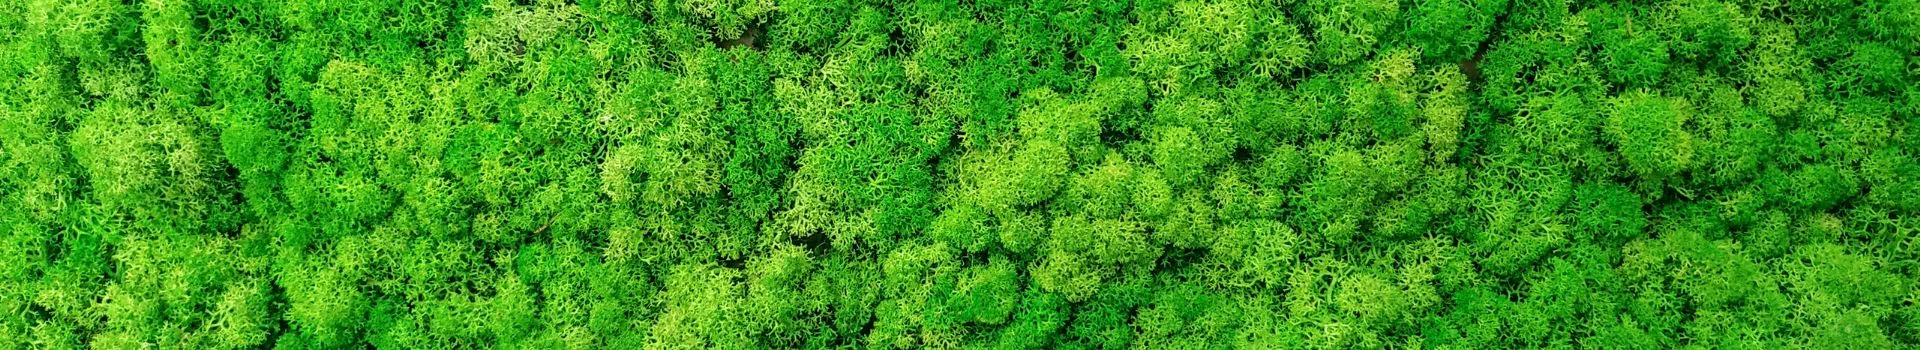 banner - zielone rośliny